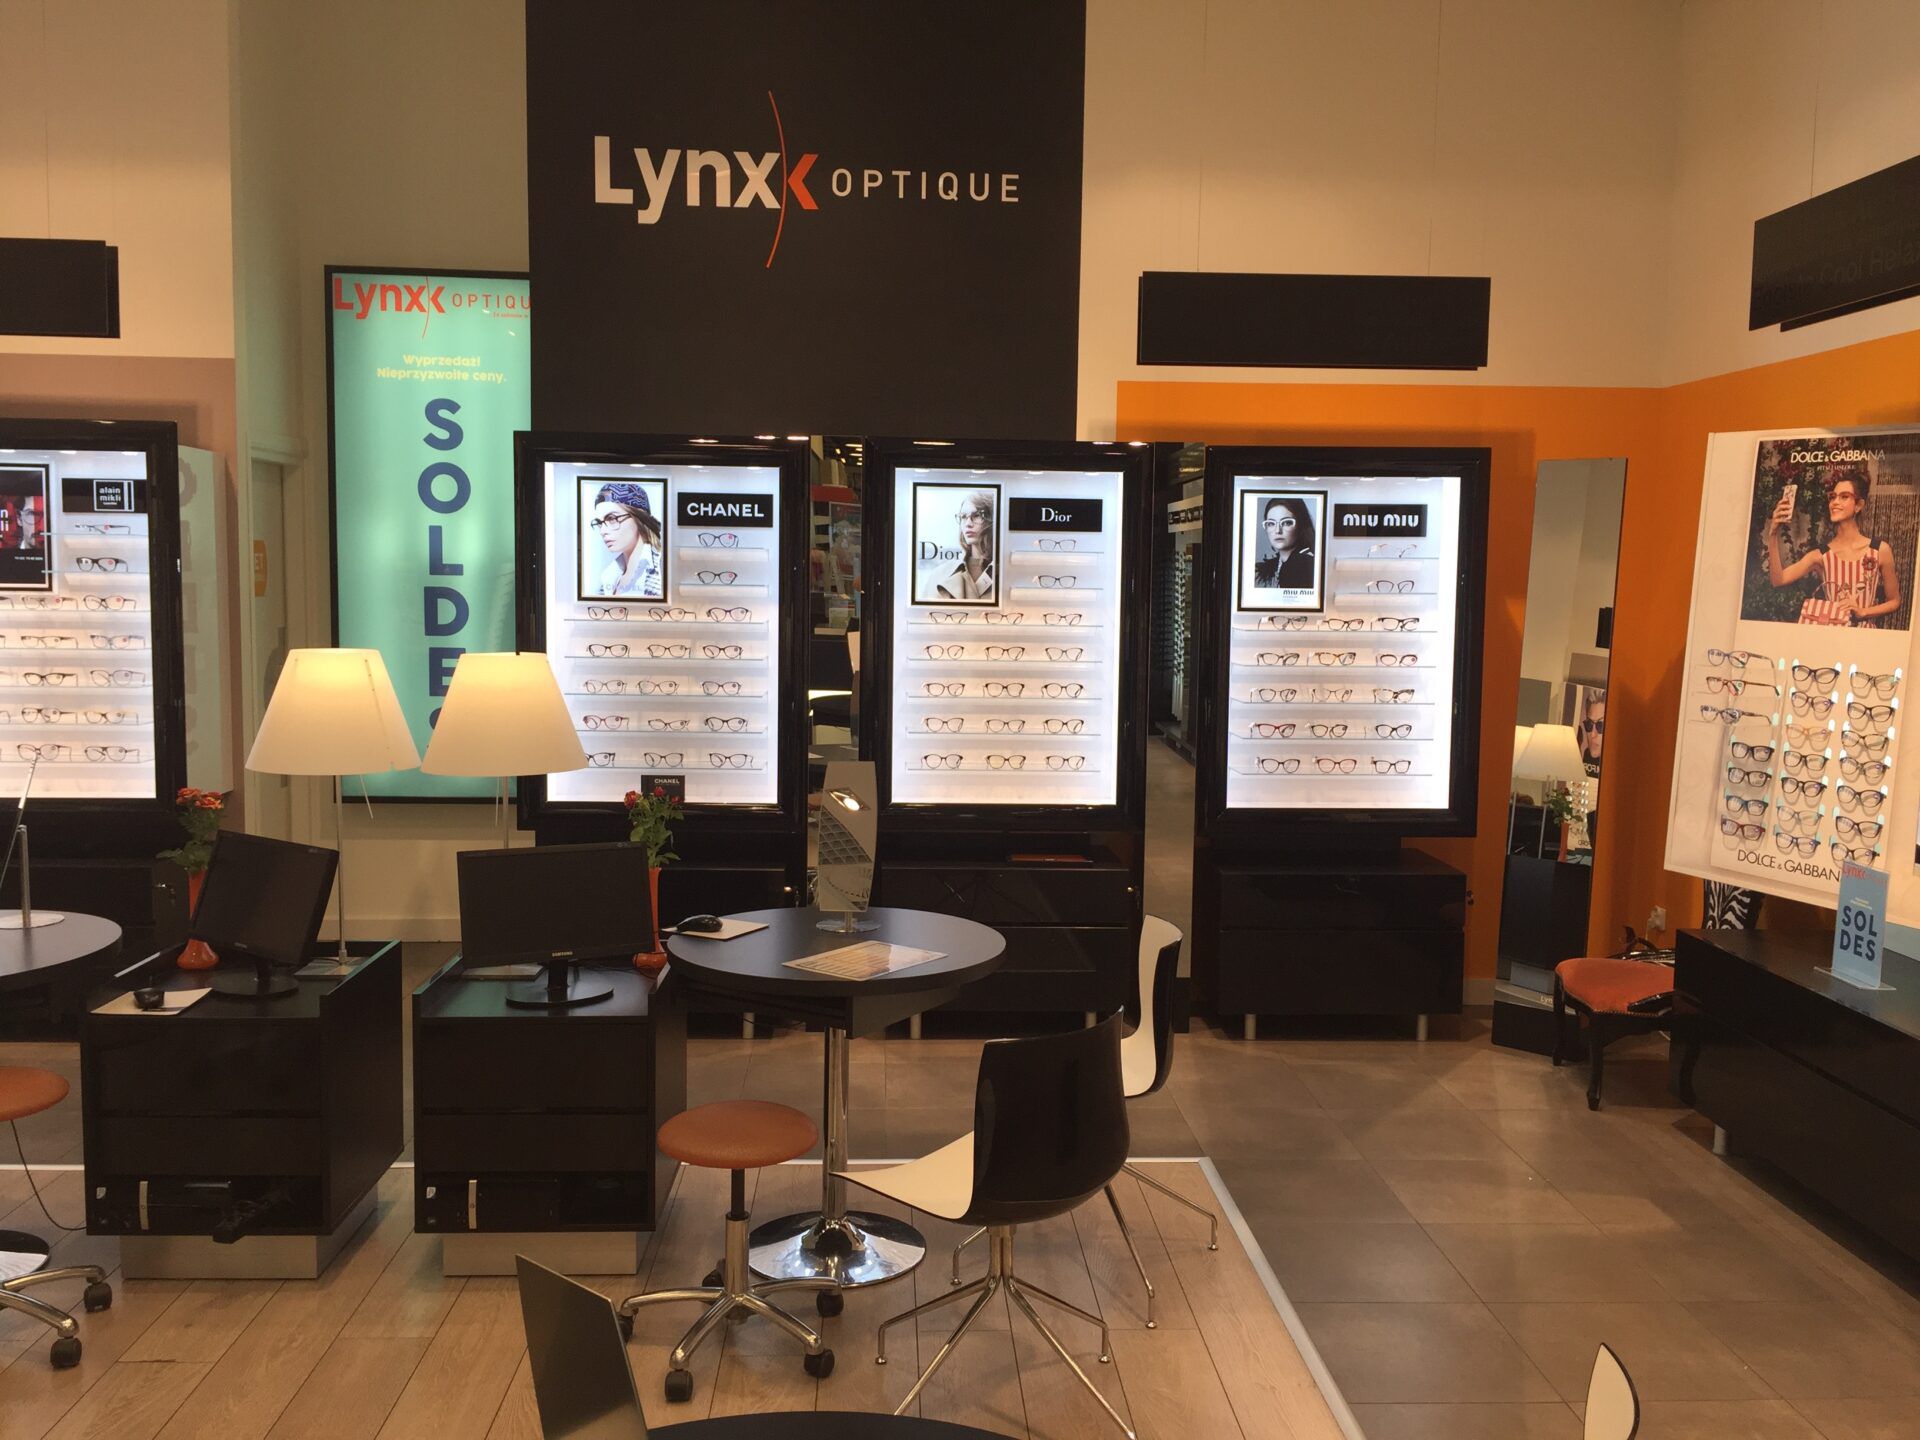 Wnętrze salonu optycznego Lynx Optique.